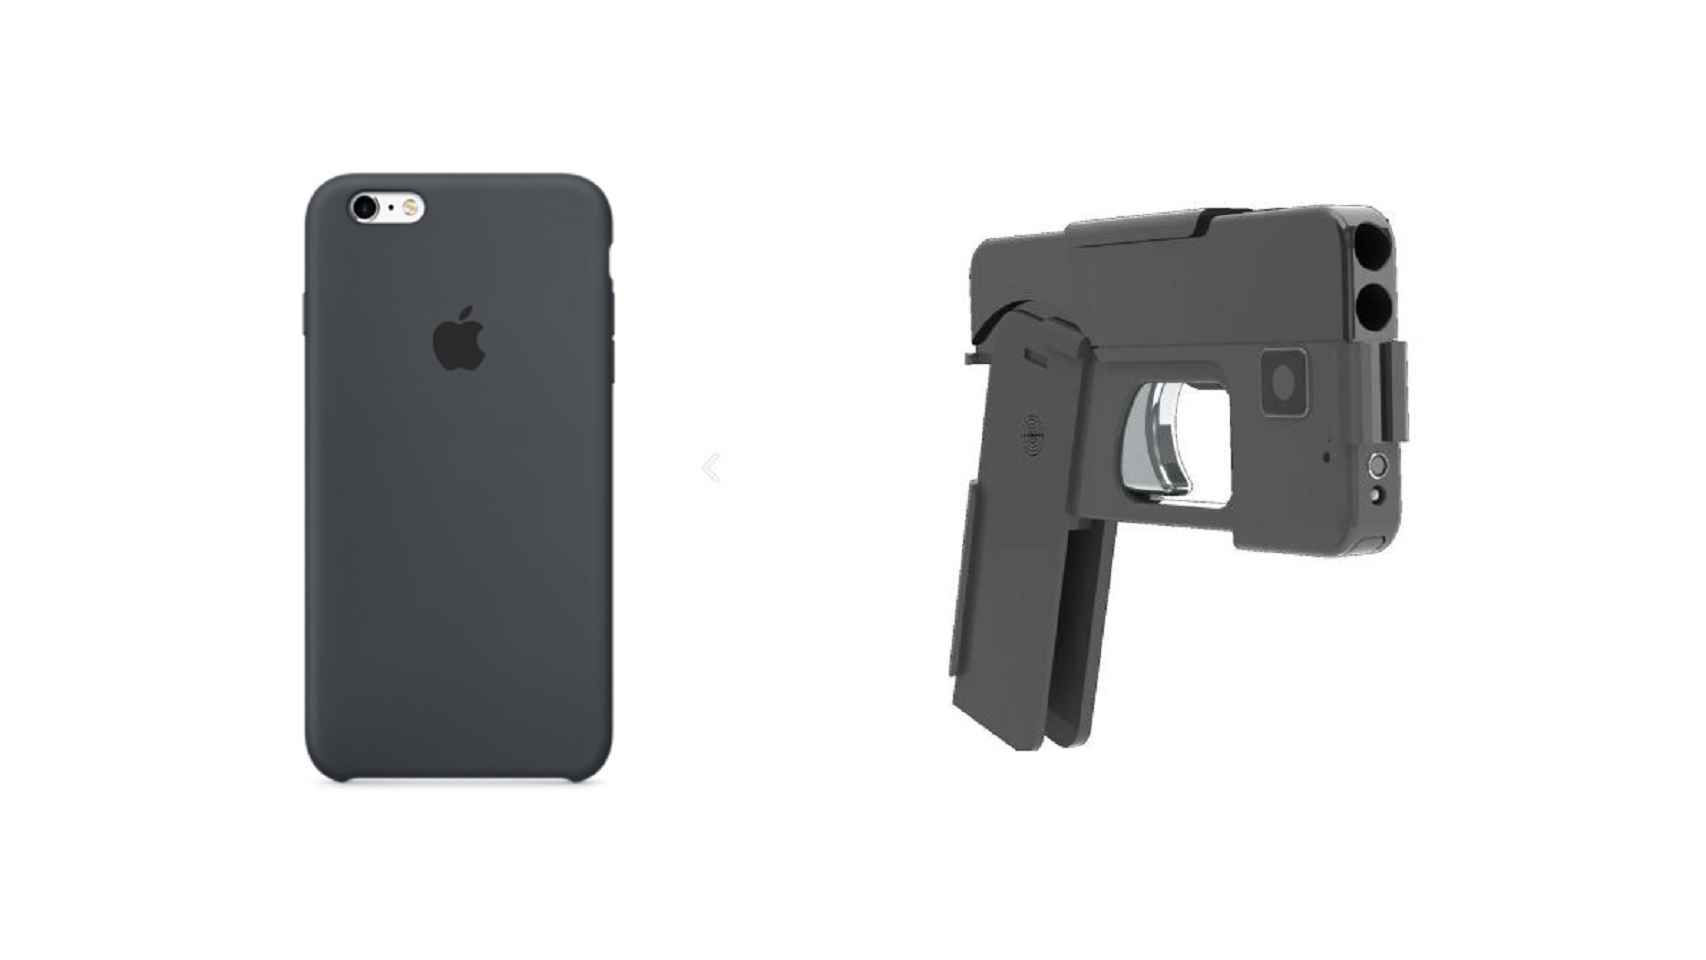 A la izquierda, un iPhone y, a la derecha, la nueva pistola